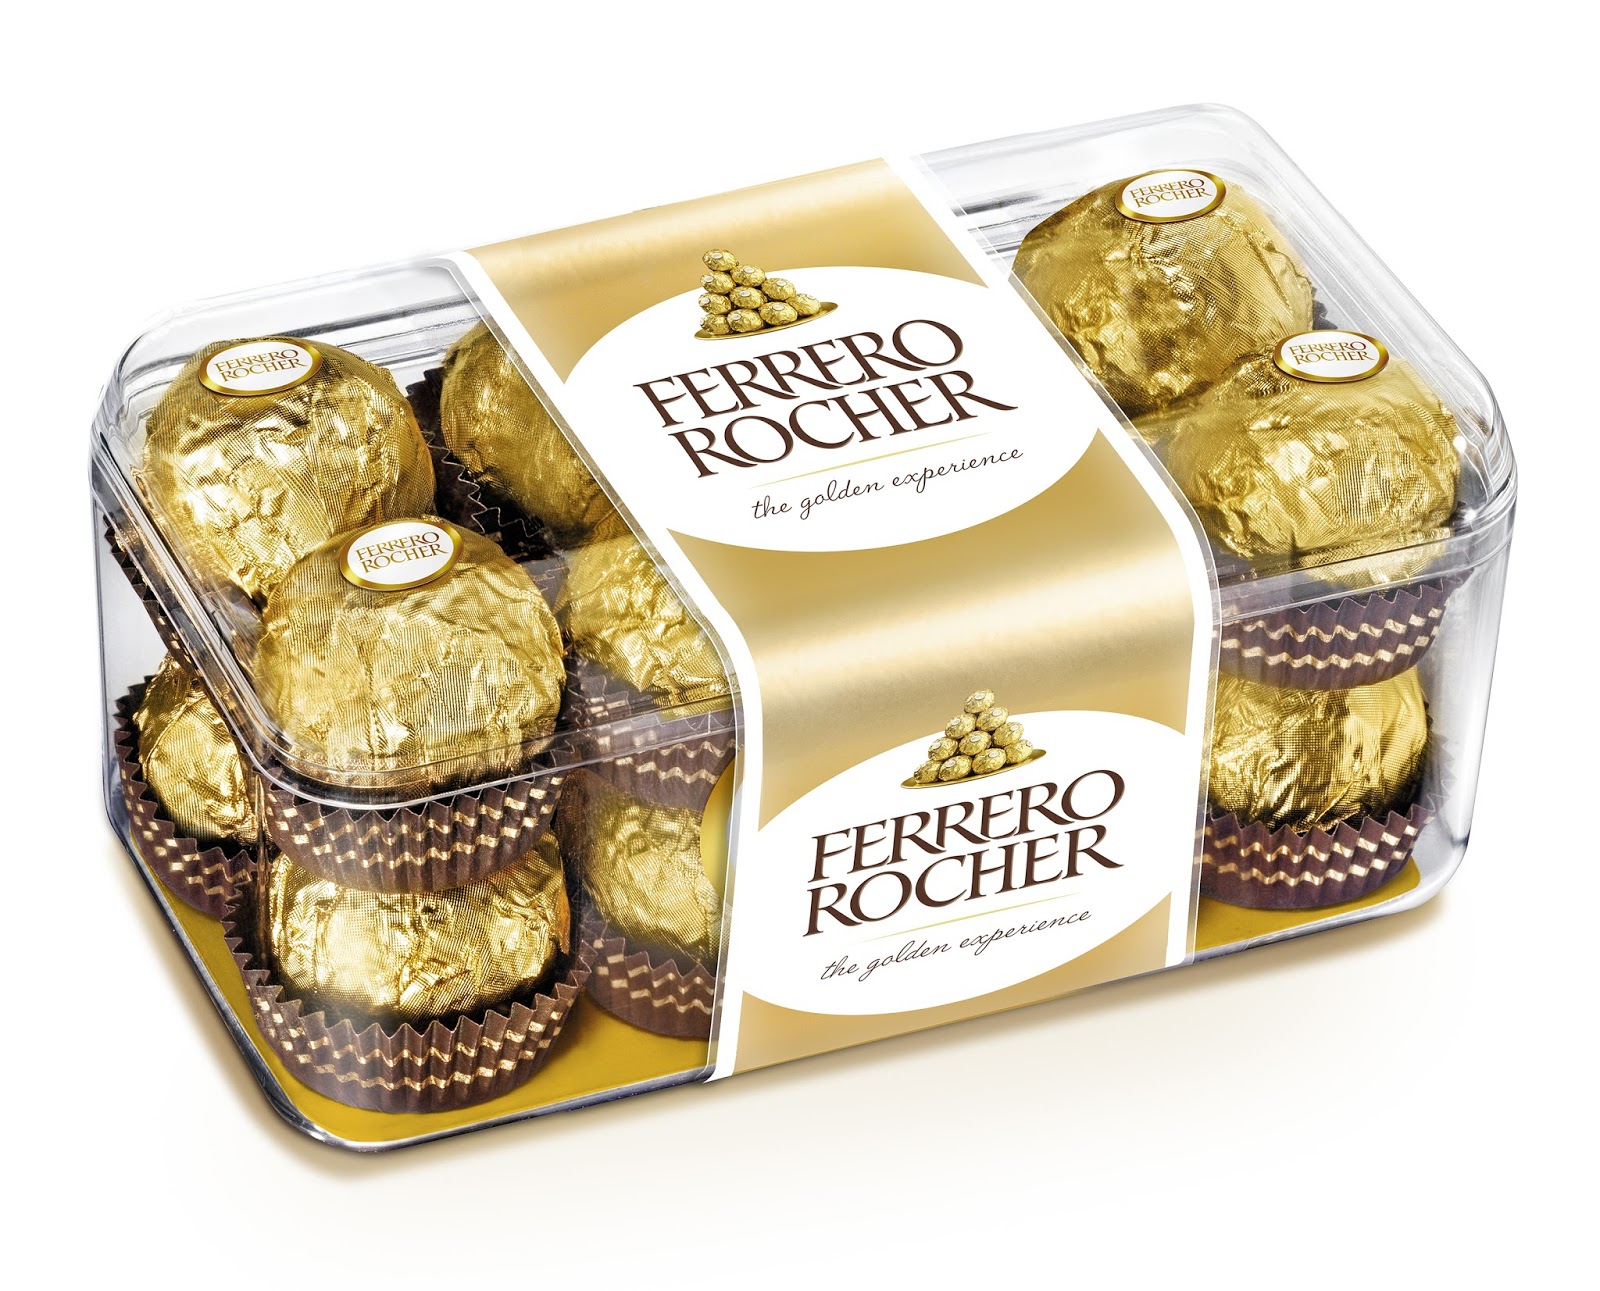 Ferrero Rocher T16 เฟอร์เรโร่ รอชเชอร์ ช็อคโกแลต 16 ลูก